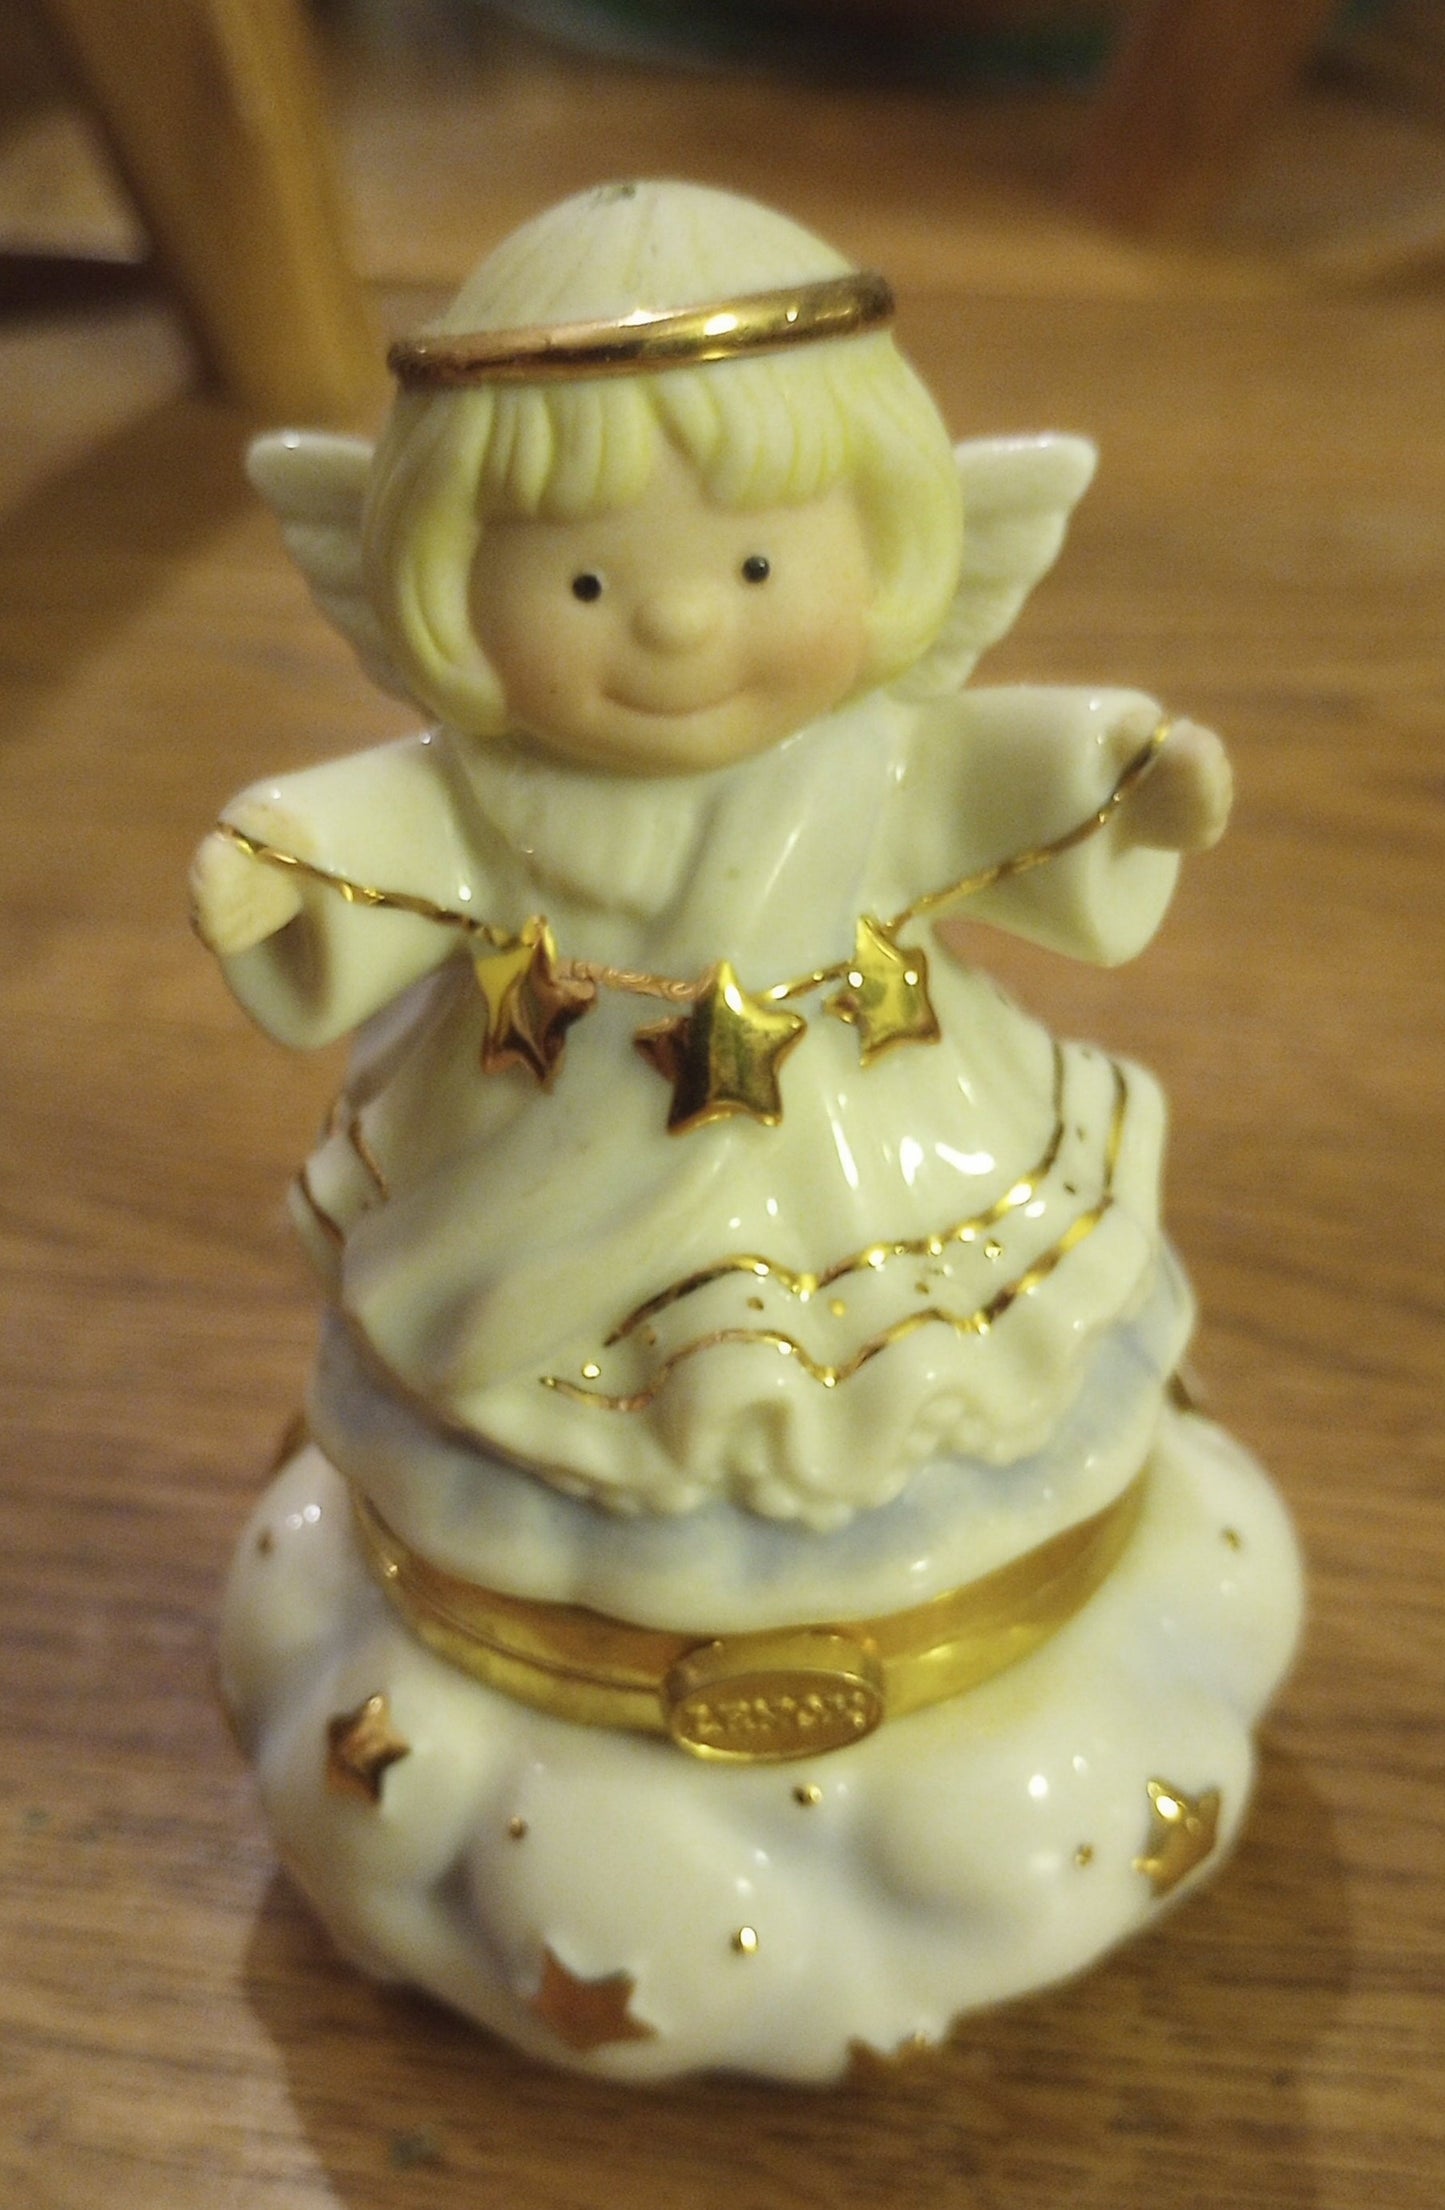 Vintage Lenox Angel Christmas figurine